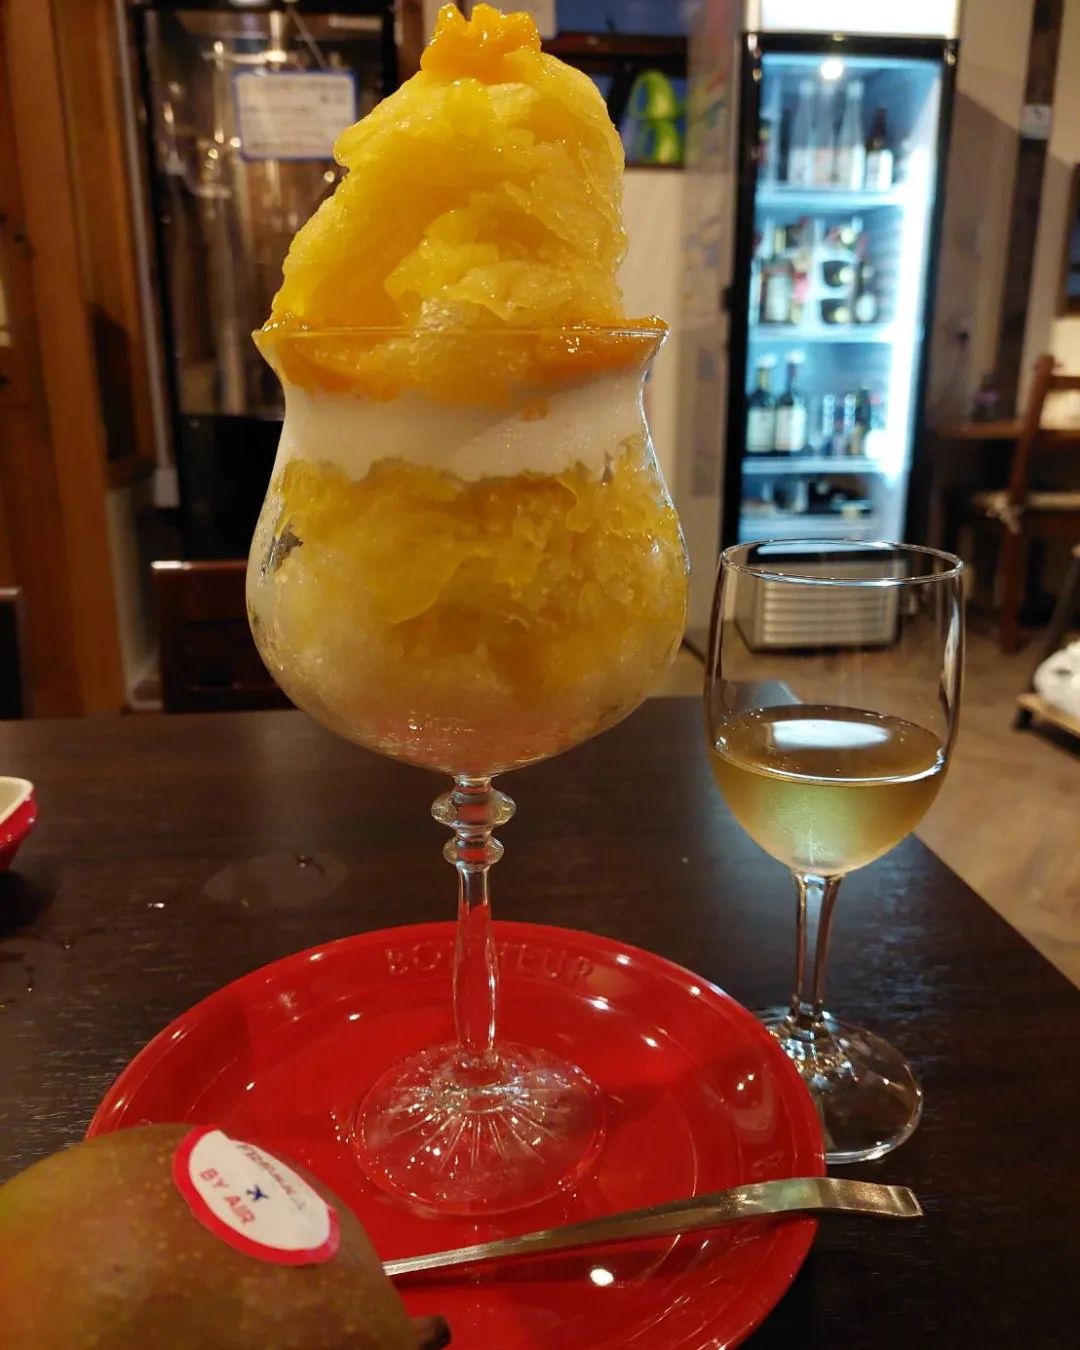 マンゴーカキ氷始めました。マンゴー好きにはたまらない珈琲カキ氷、イチゴカキ氷に次ぐこの夏新作です。何故か白ワインのキシとの相性も抜群です。#福島区カキ氷#マンゴーかき氷 #マンゴー大阪 #マンゴー好きな人と繋がりたい